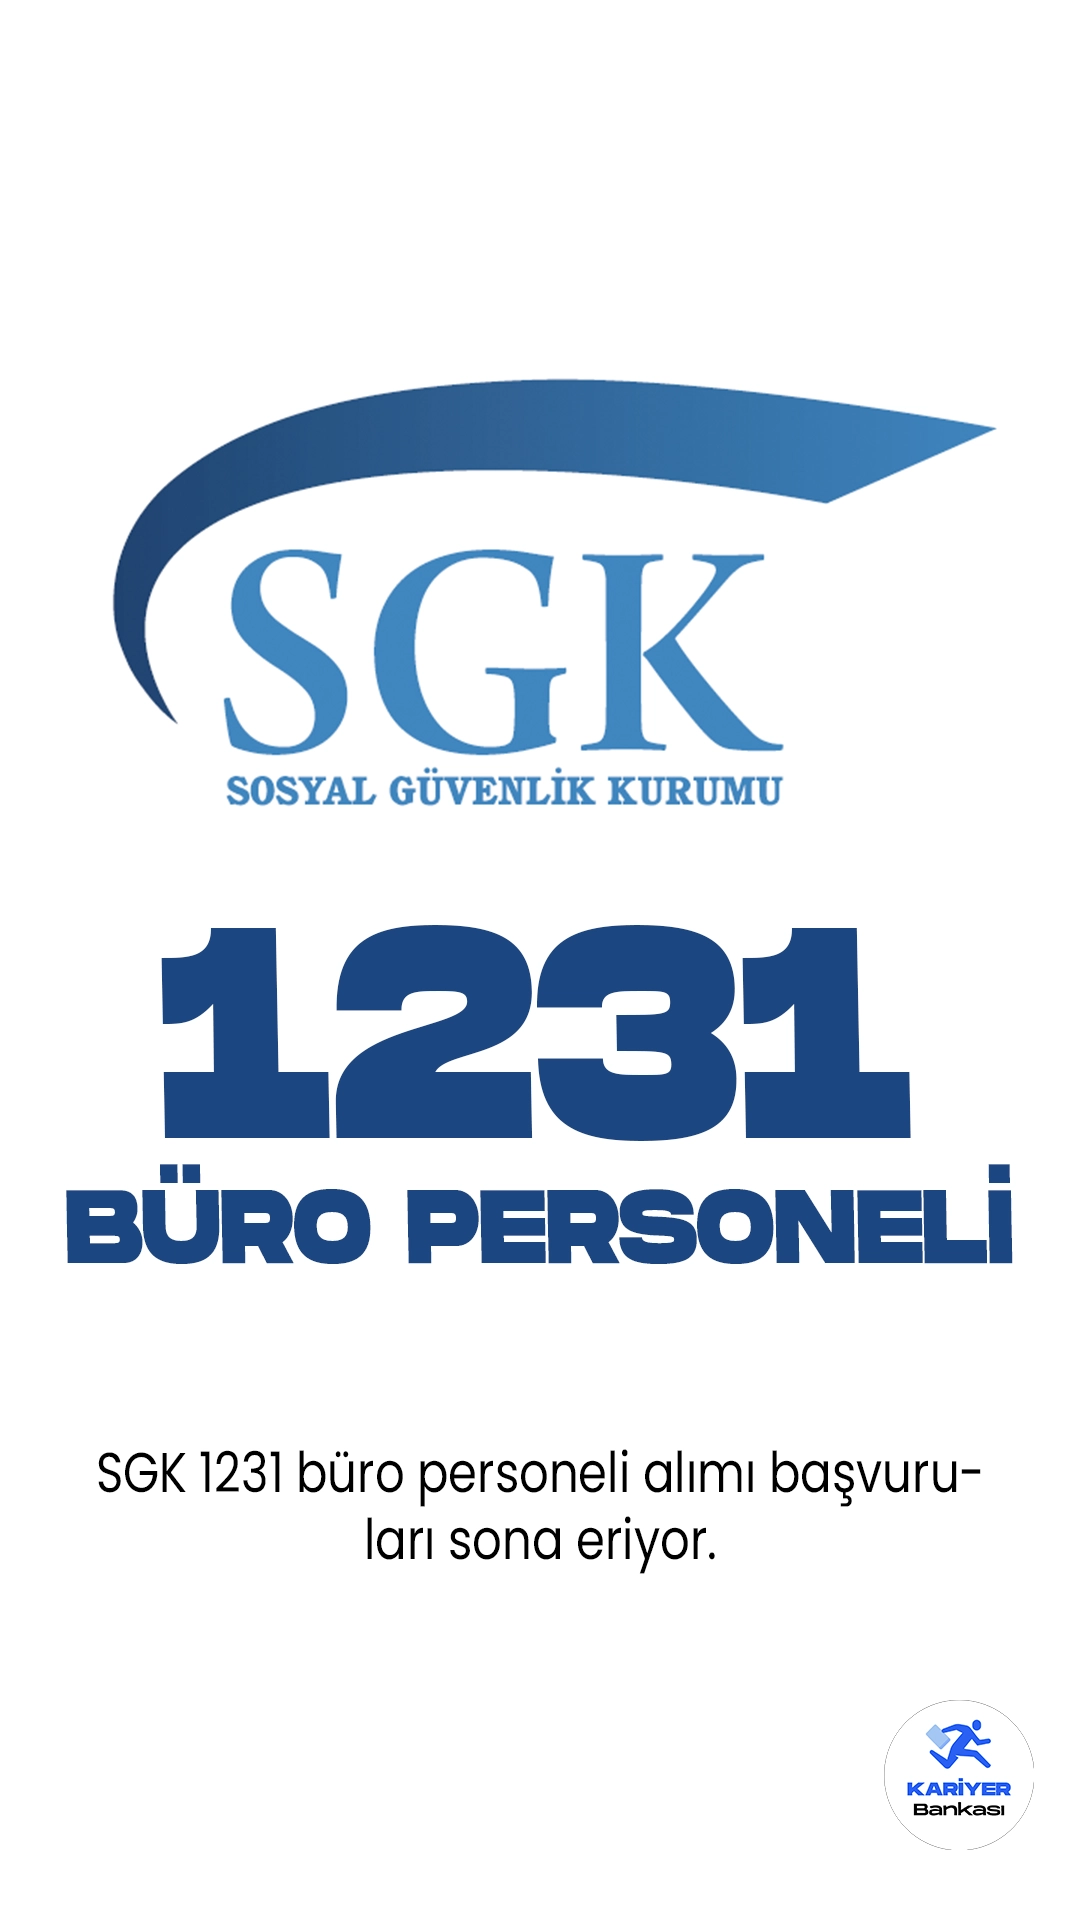 SGK 1231 Büro Personeli Alımı Başvuruları Sona Eriyor. KPSS 2023/6 ile Sosyal Güvenlik Kurumu (SGK) sözleşmeli personel alımı için tercih işlemlerinde sona gelindi. Başvurular yarın(11 Ekim) sona erecek. Tercih kılavuzuna göre ön lisans ve lisans mezunu adaylar arasından olmak üzere toplamda 1231 büro personeli alımı yapılacak.